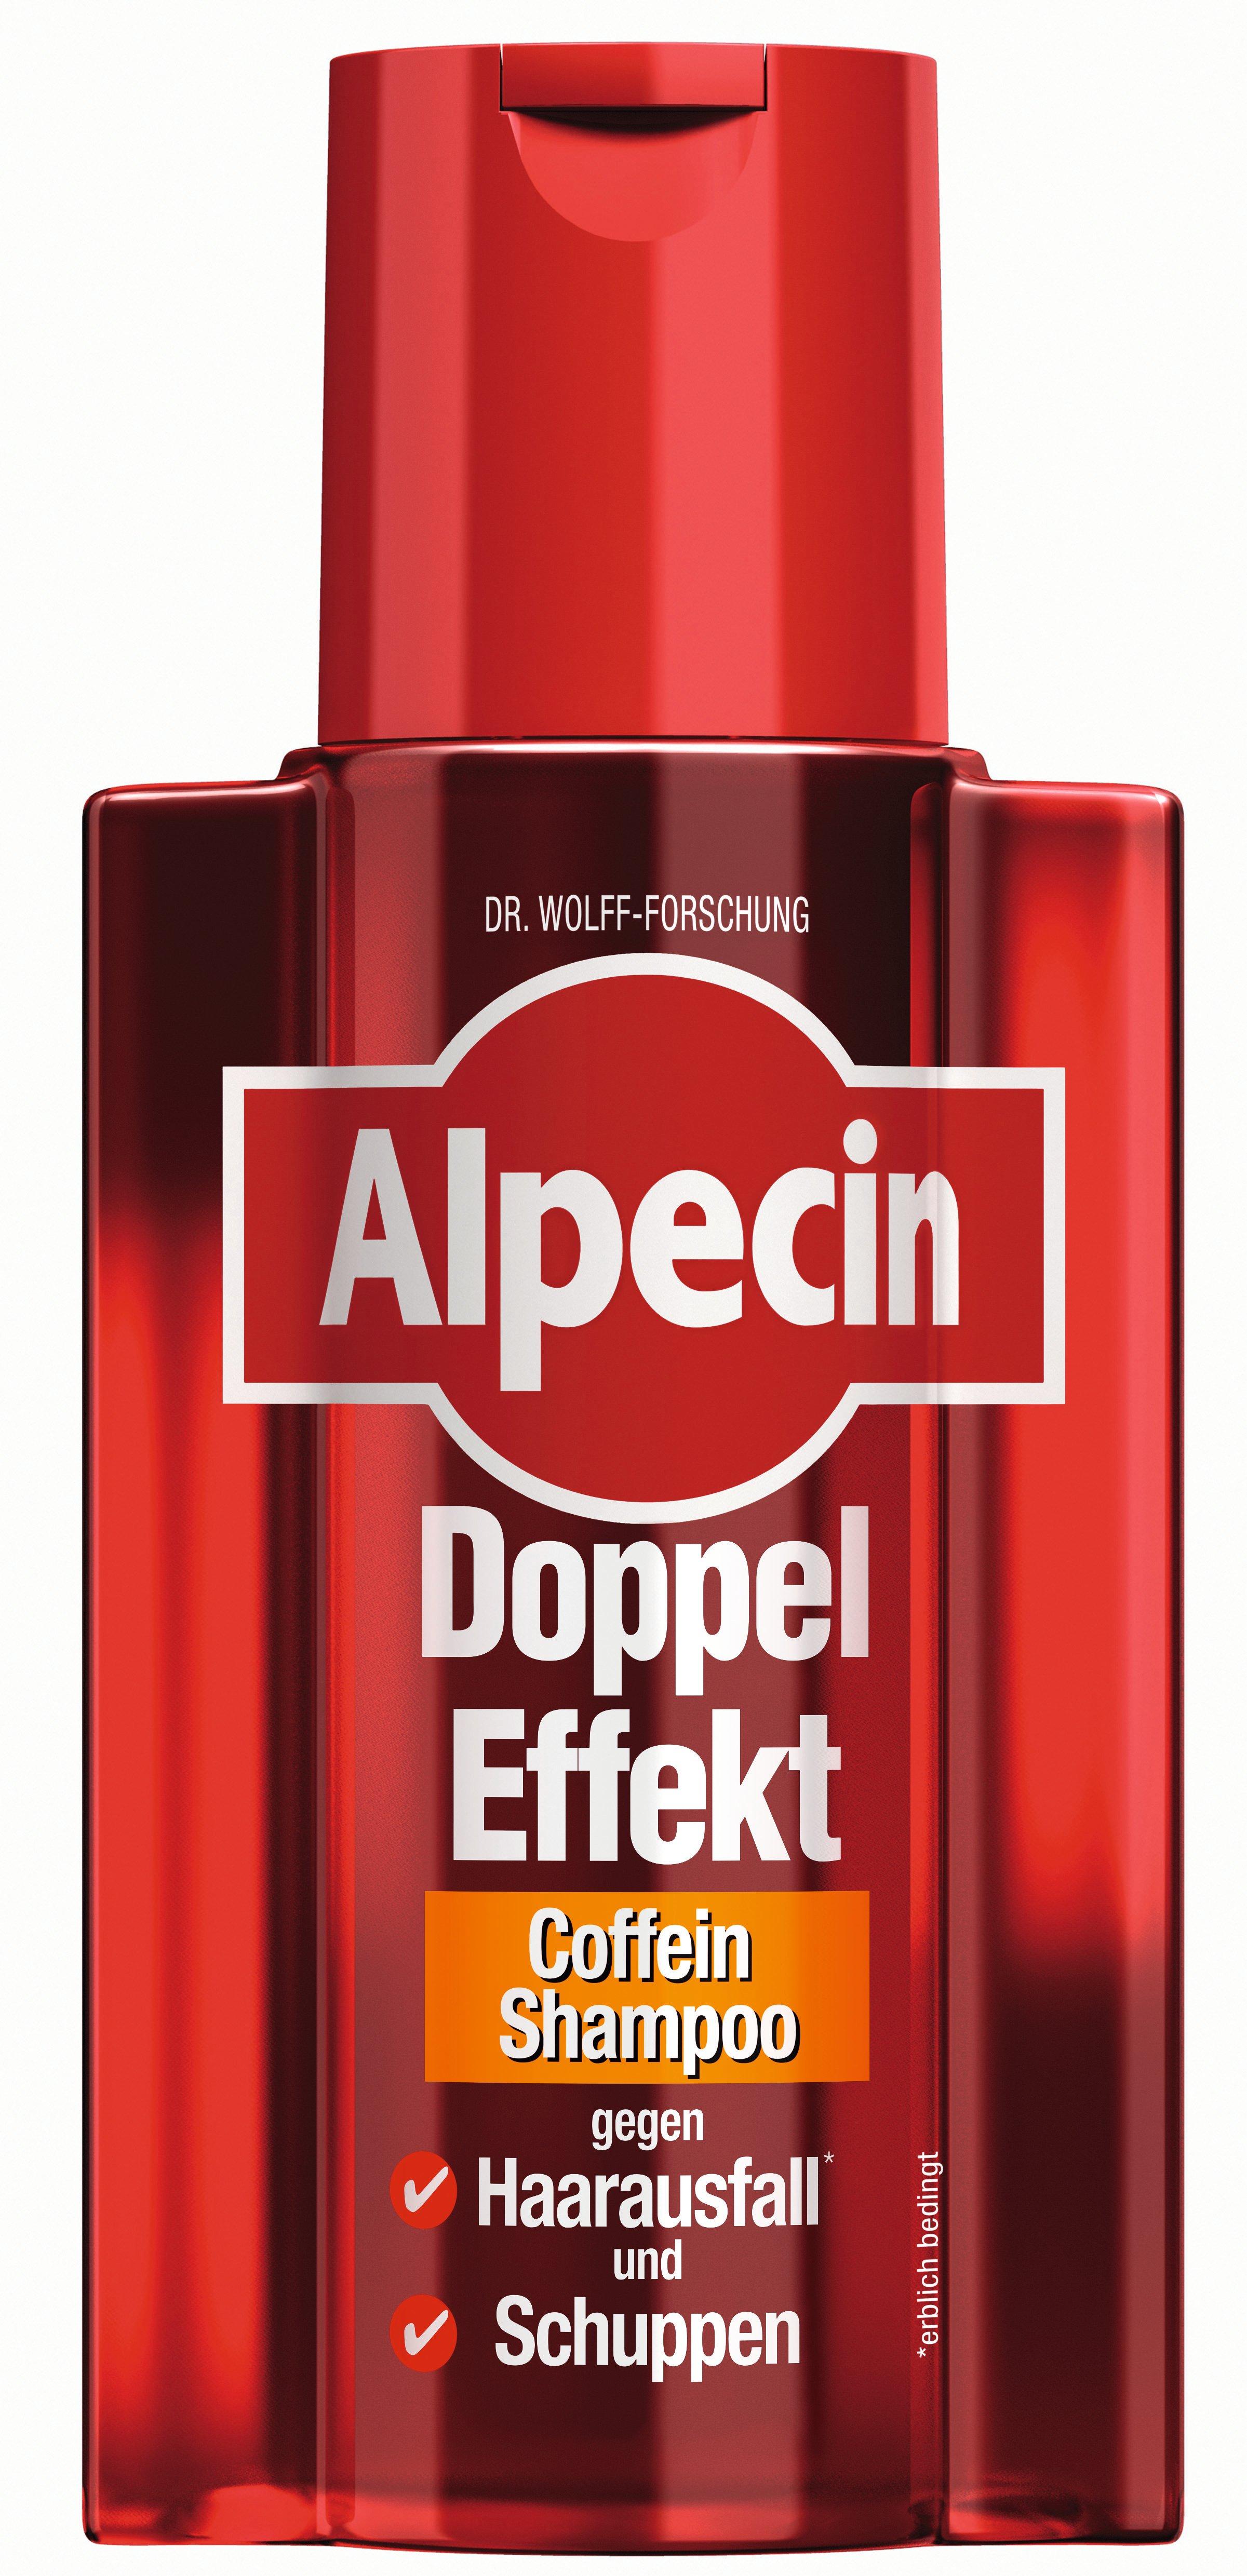 Image of Alpecin DOPPEL-EFFEKT COFFEIN SHAMPOO Doppel Effekt Coffein Shampoo - 200ml